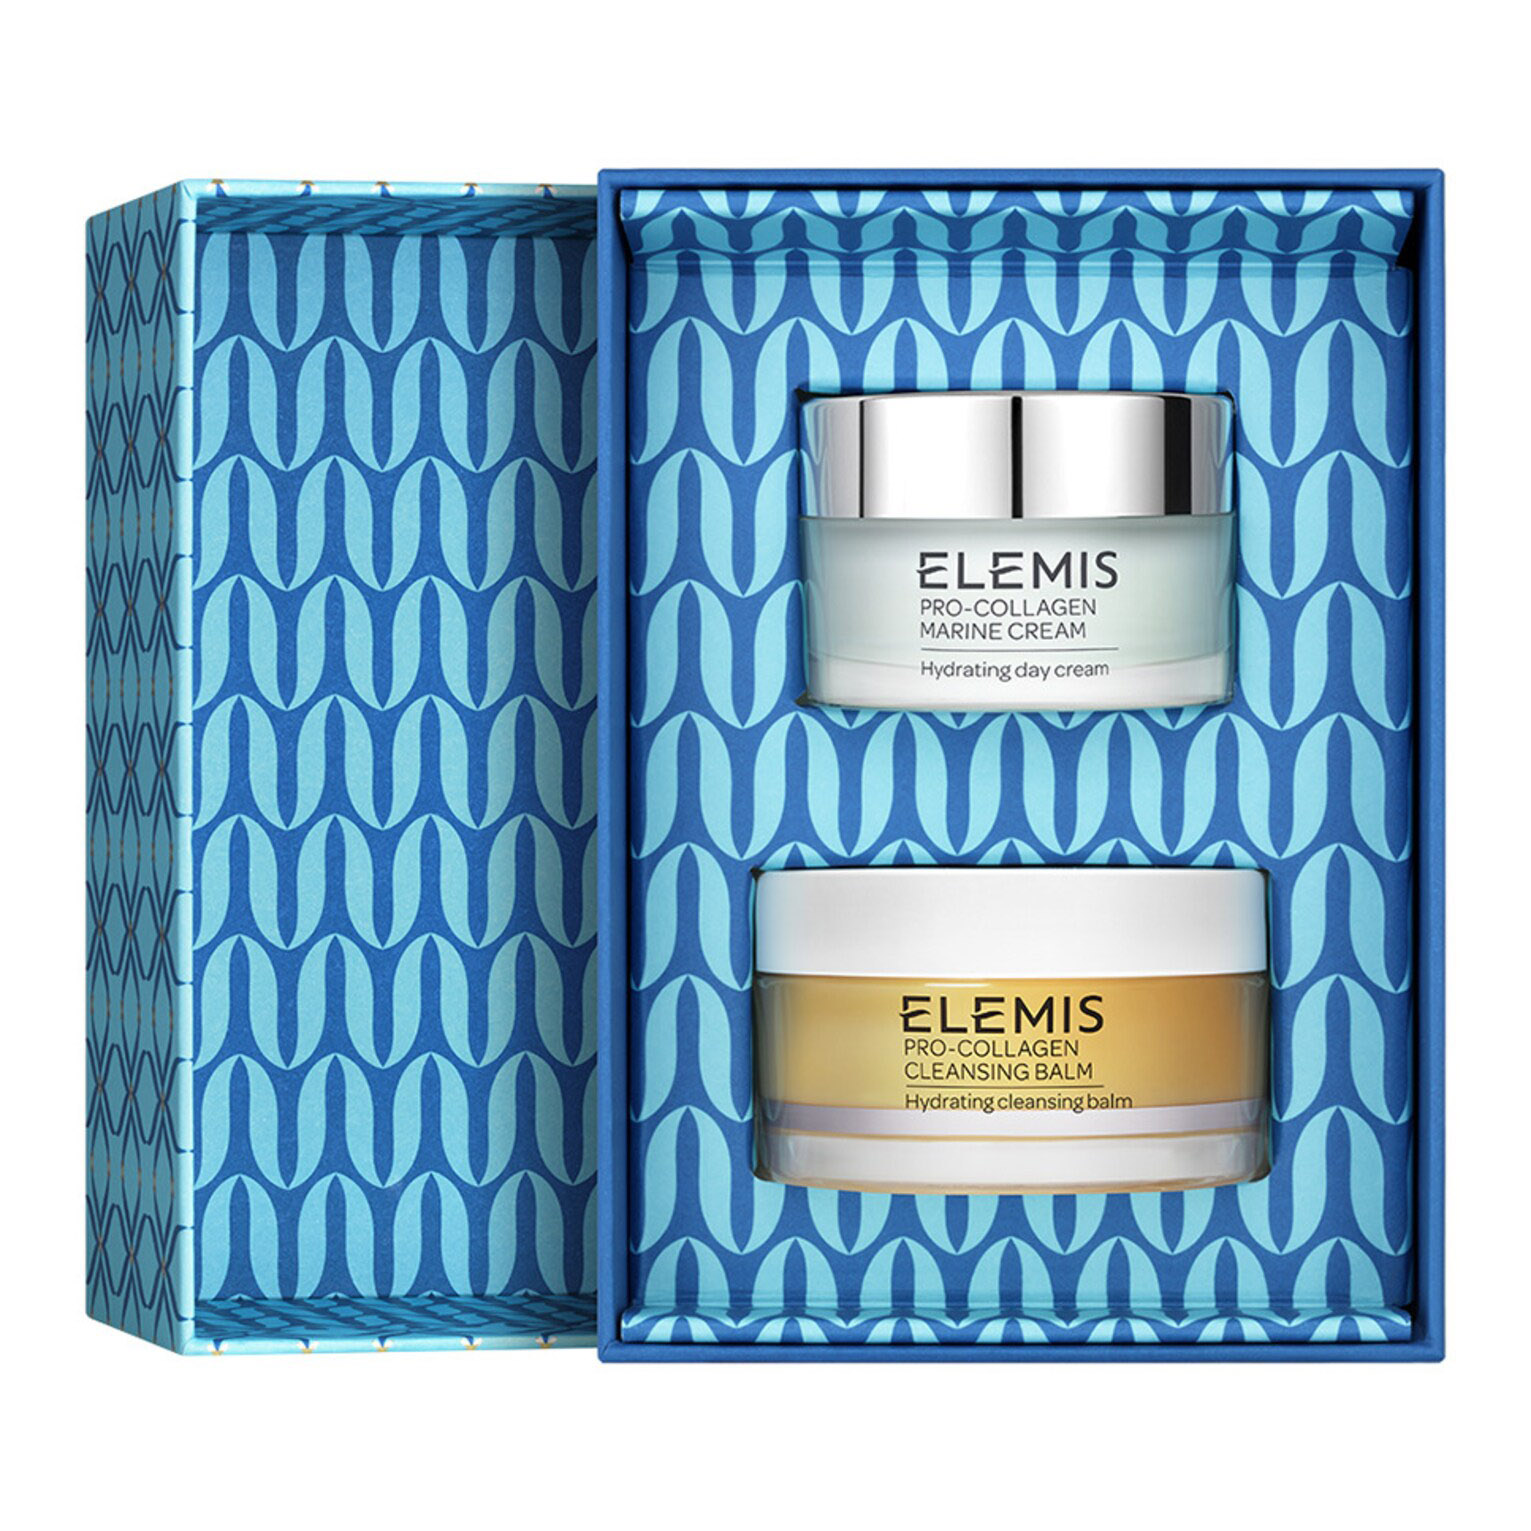 Подарочный набор Elemis The Gift Of Pro-Collagen, 2 предмета